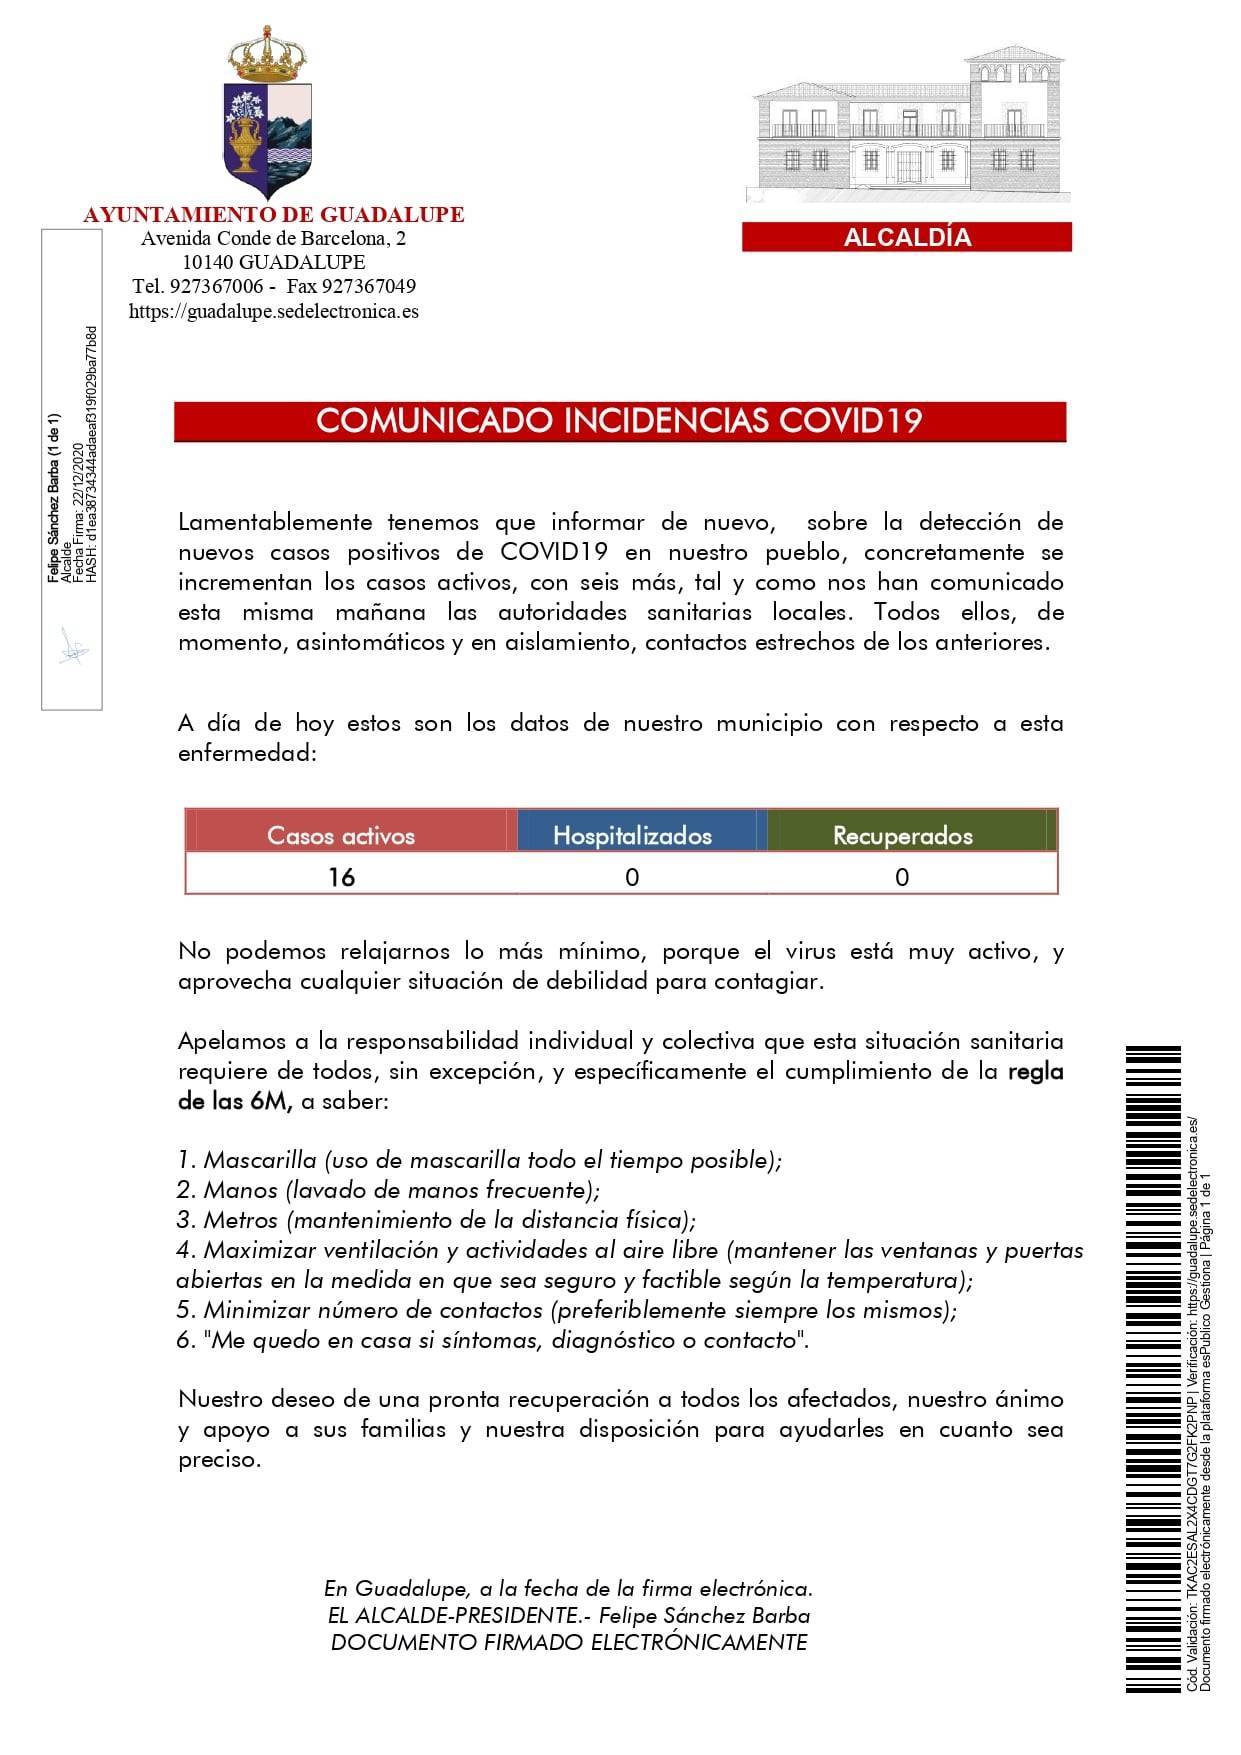 16 casos positivos activos de COVID-19 (diciembre 2020) - Guadalupe (Cáceres)